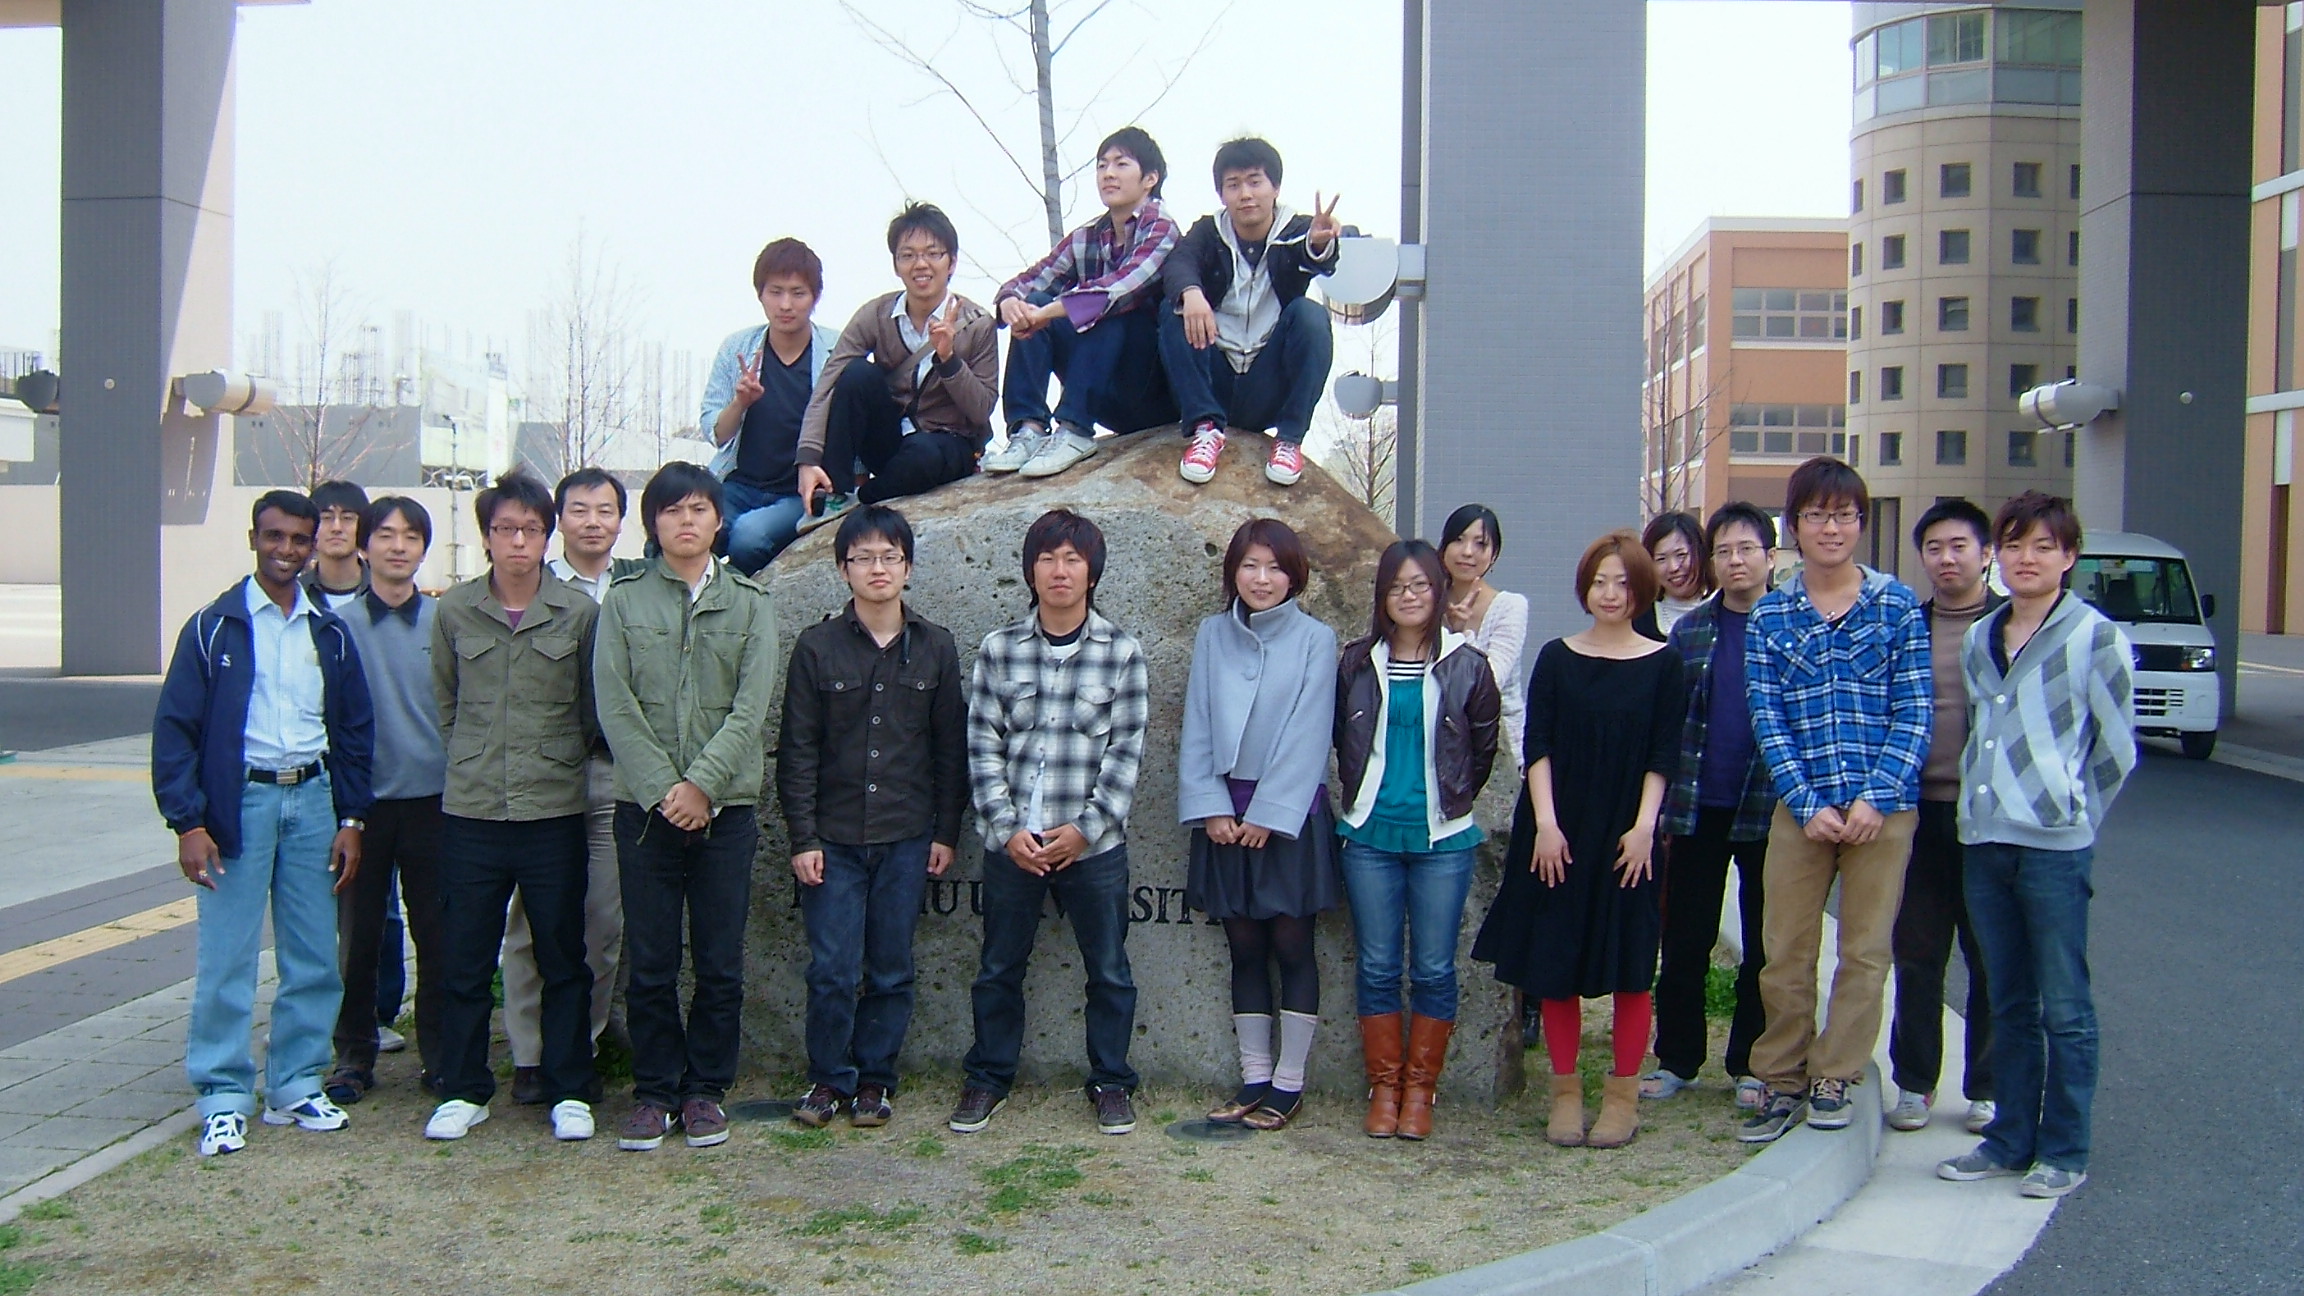 2009 Members